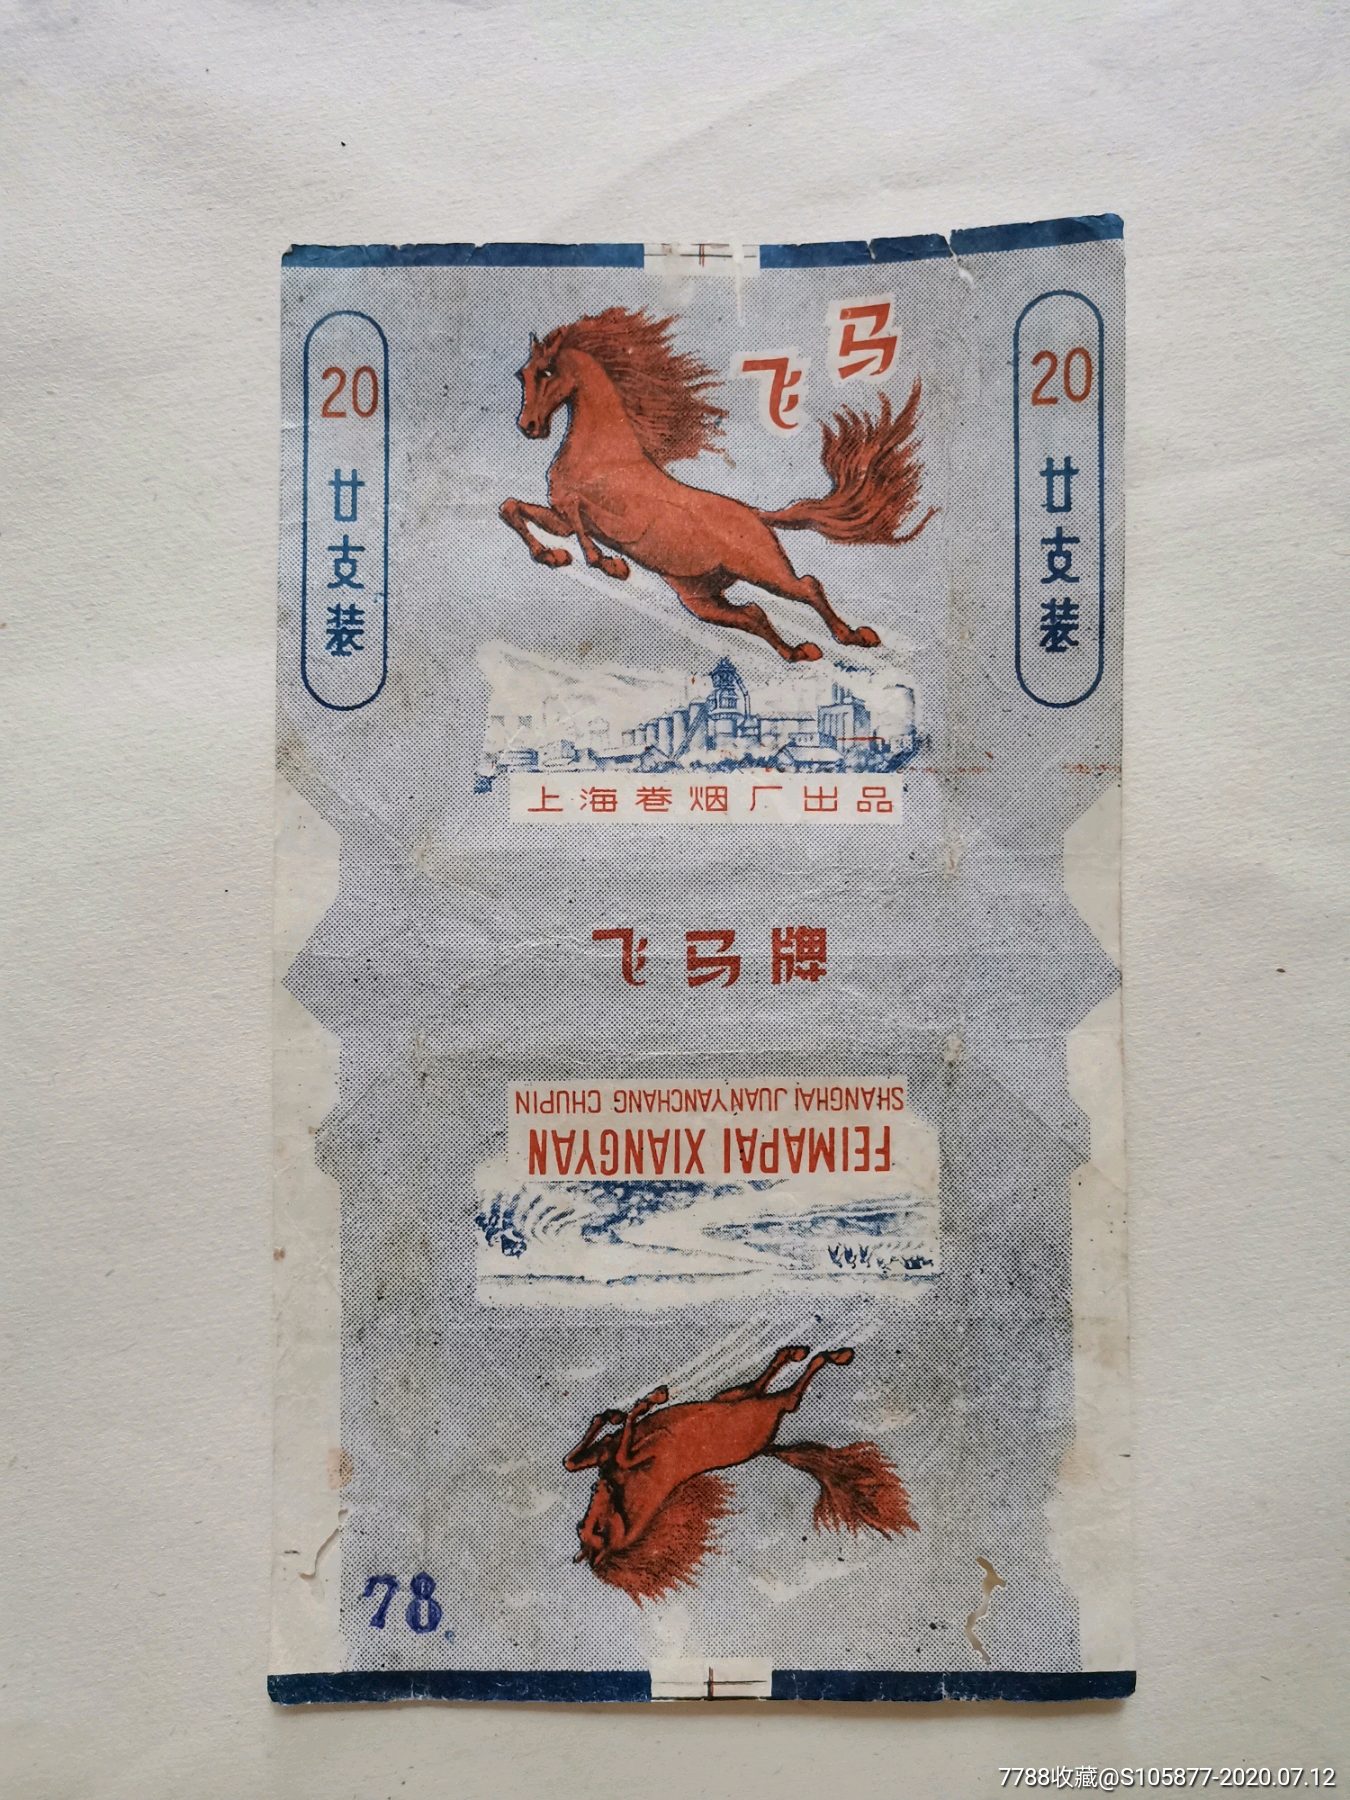 上海卷烟厂出品的飞马香烟烟标一张_价格2元_第1张